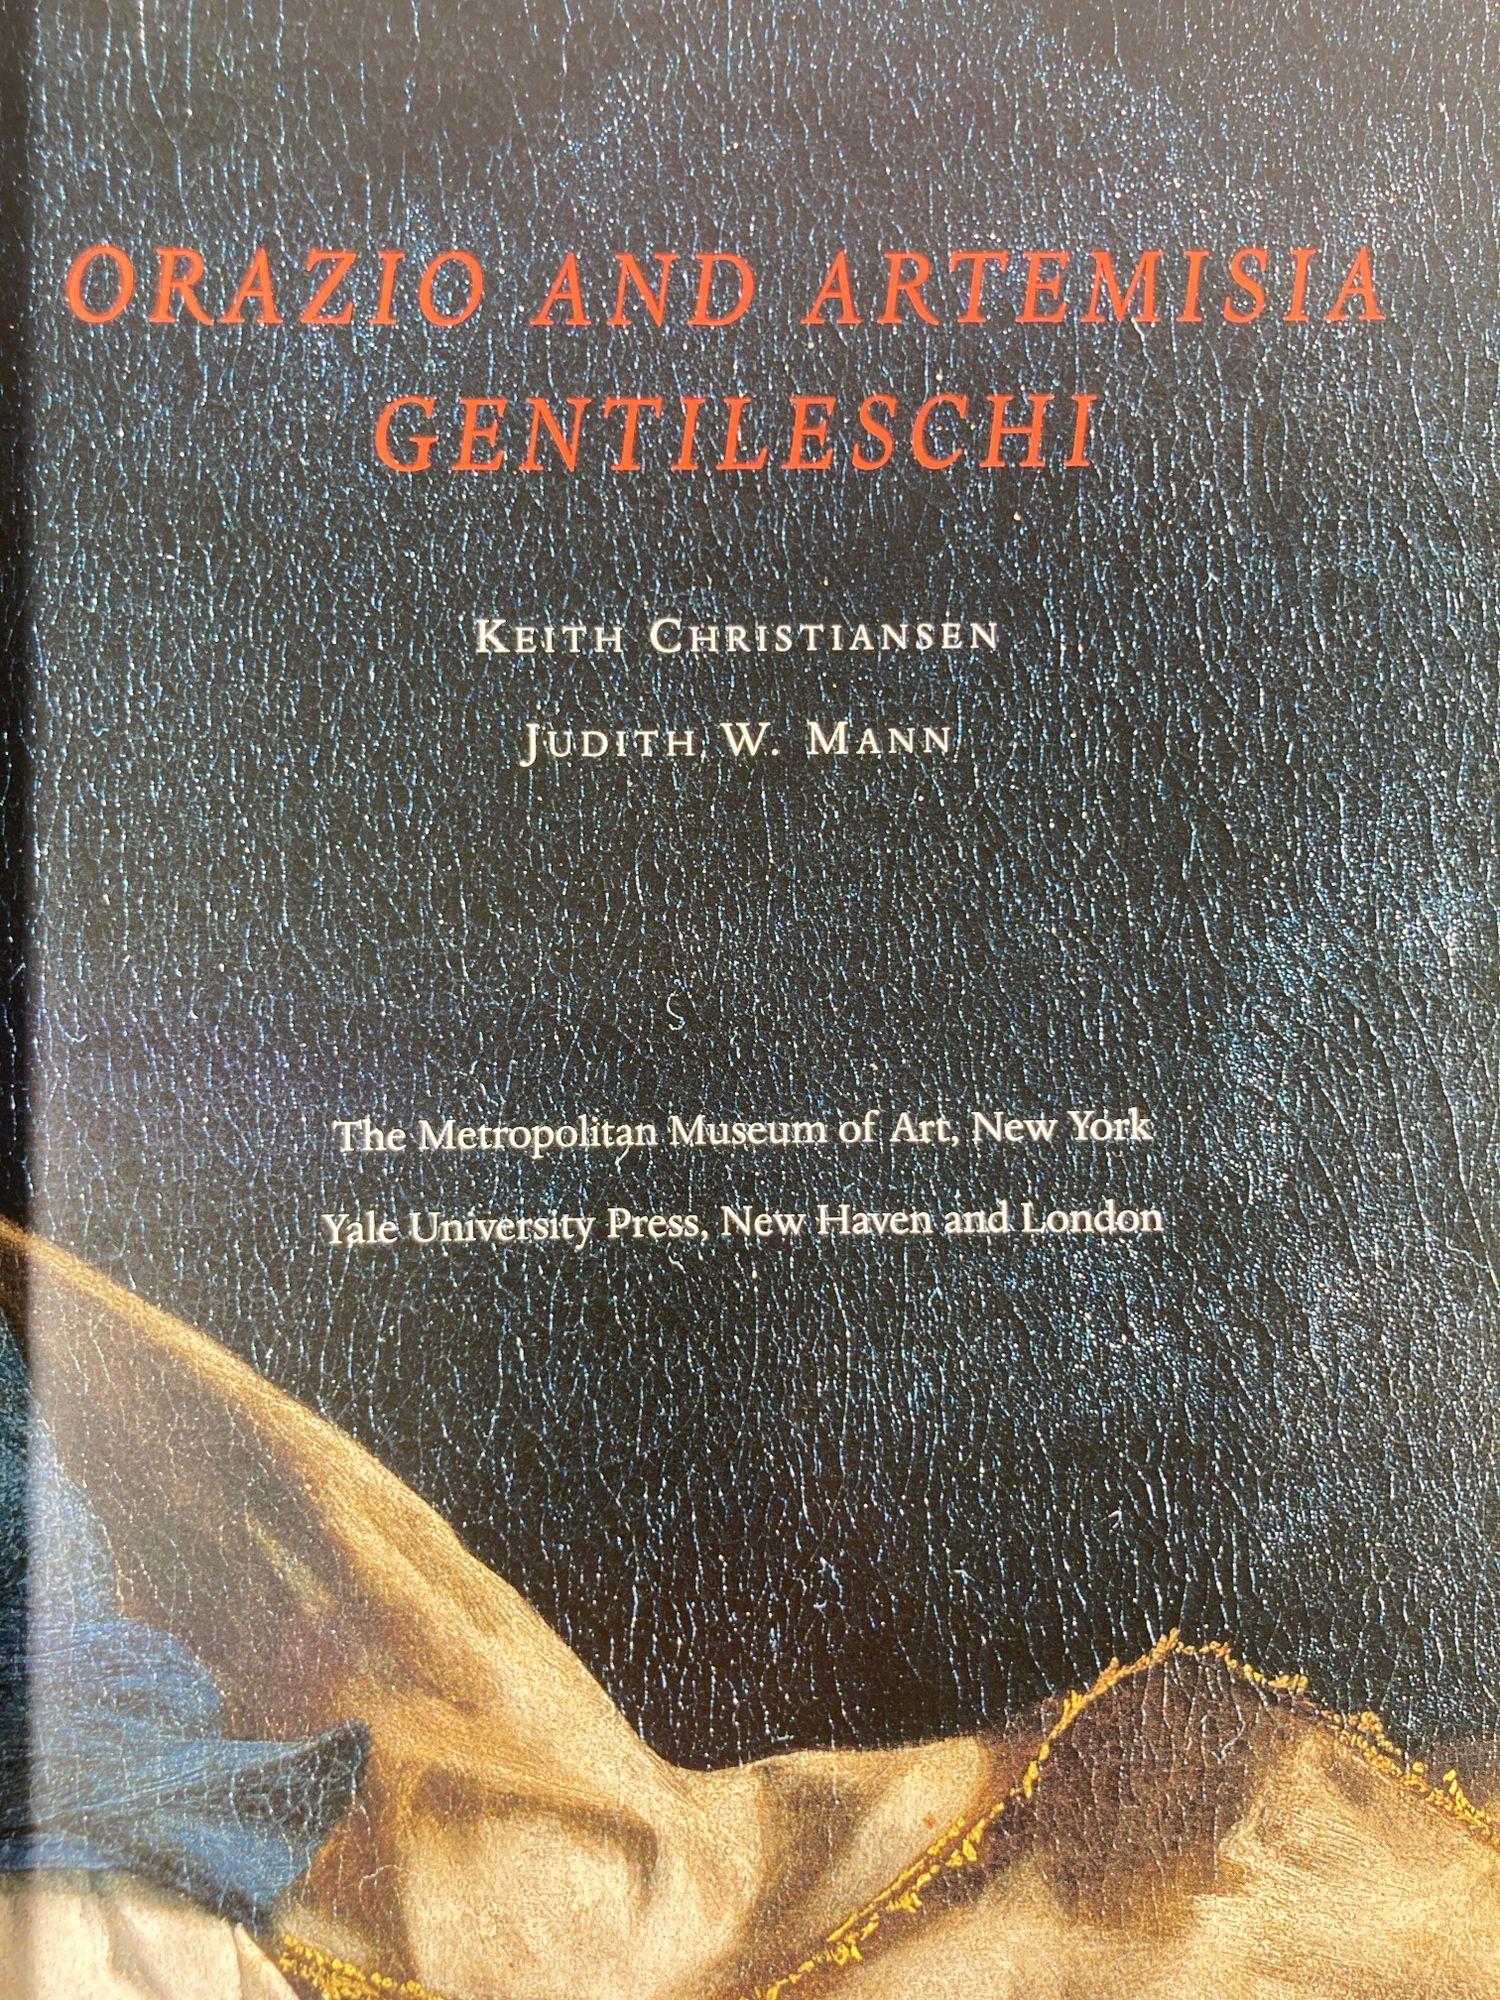 Contemporary Orazio and Artemisia Gentileschi Book